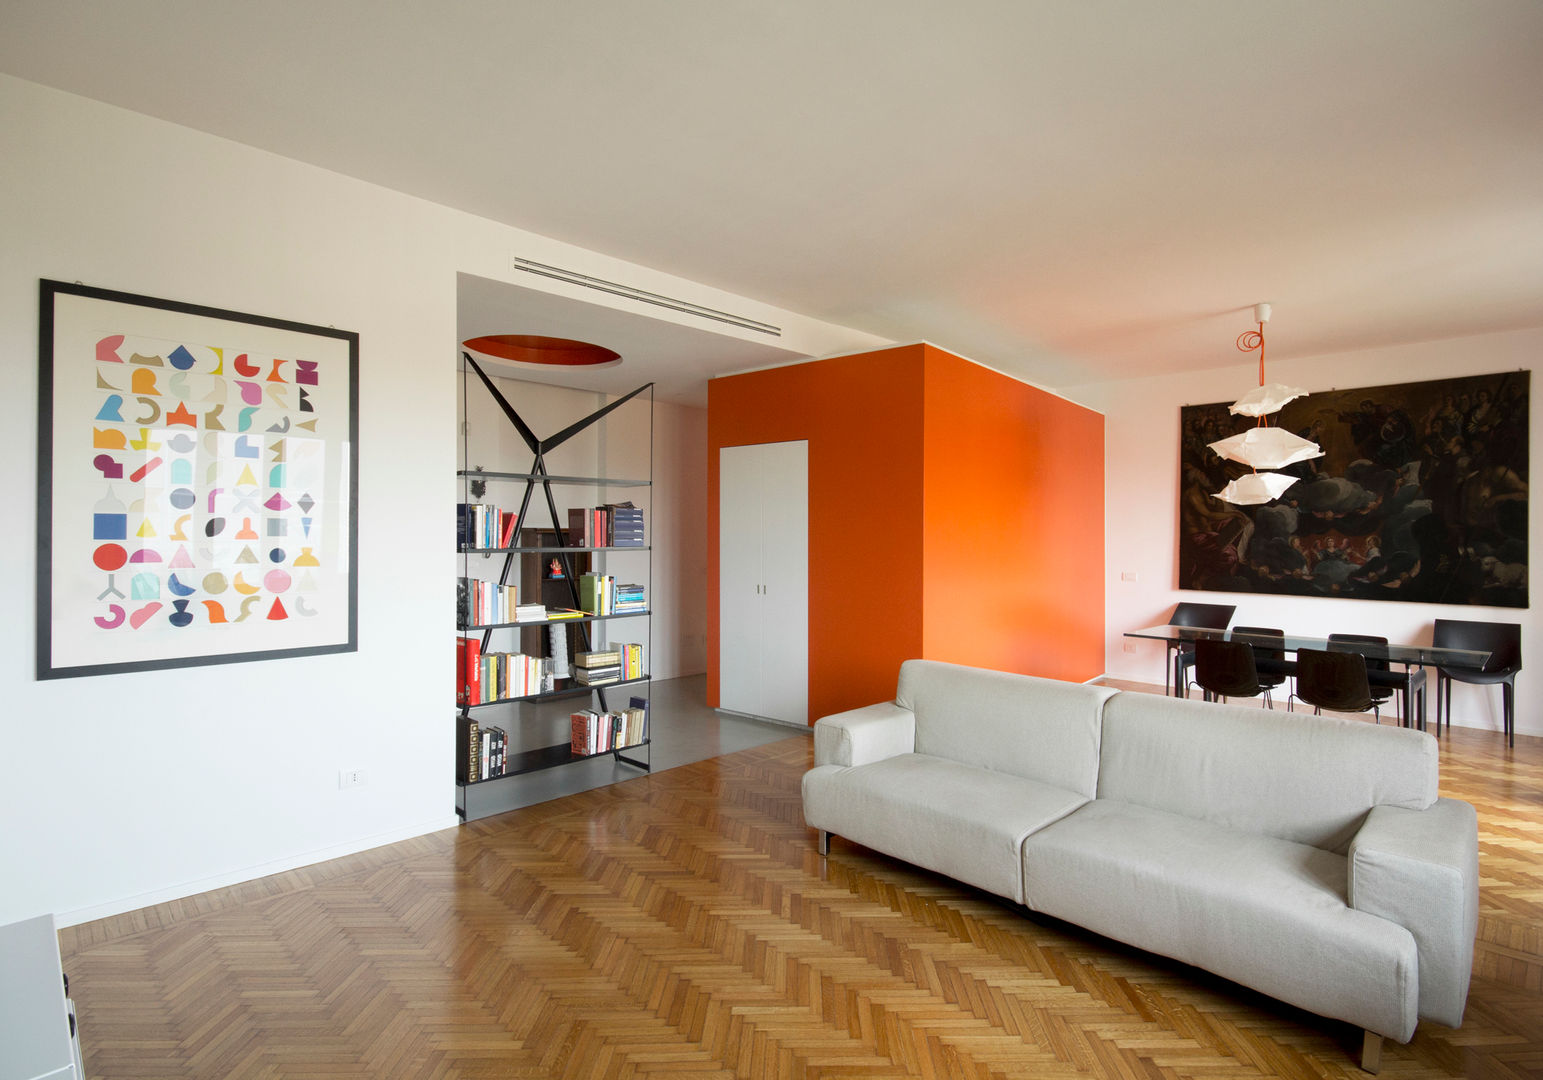 Casa CUBO, Giulietta Boggio archidesign Giulietta Boggio archidesign Rumah: Ide desain interior, inspirasi & gambar